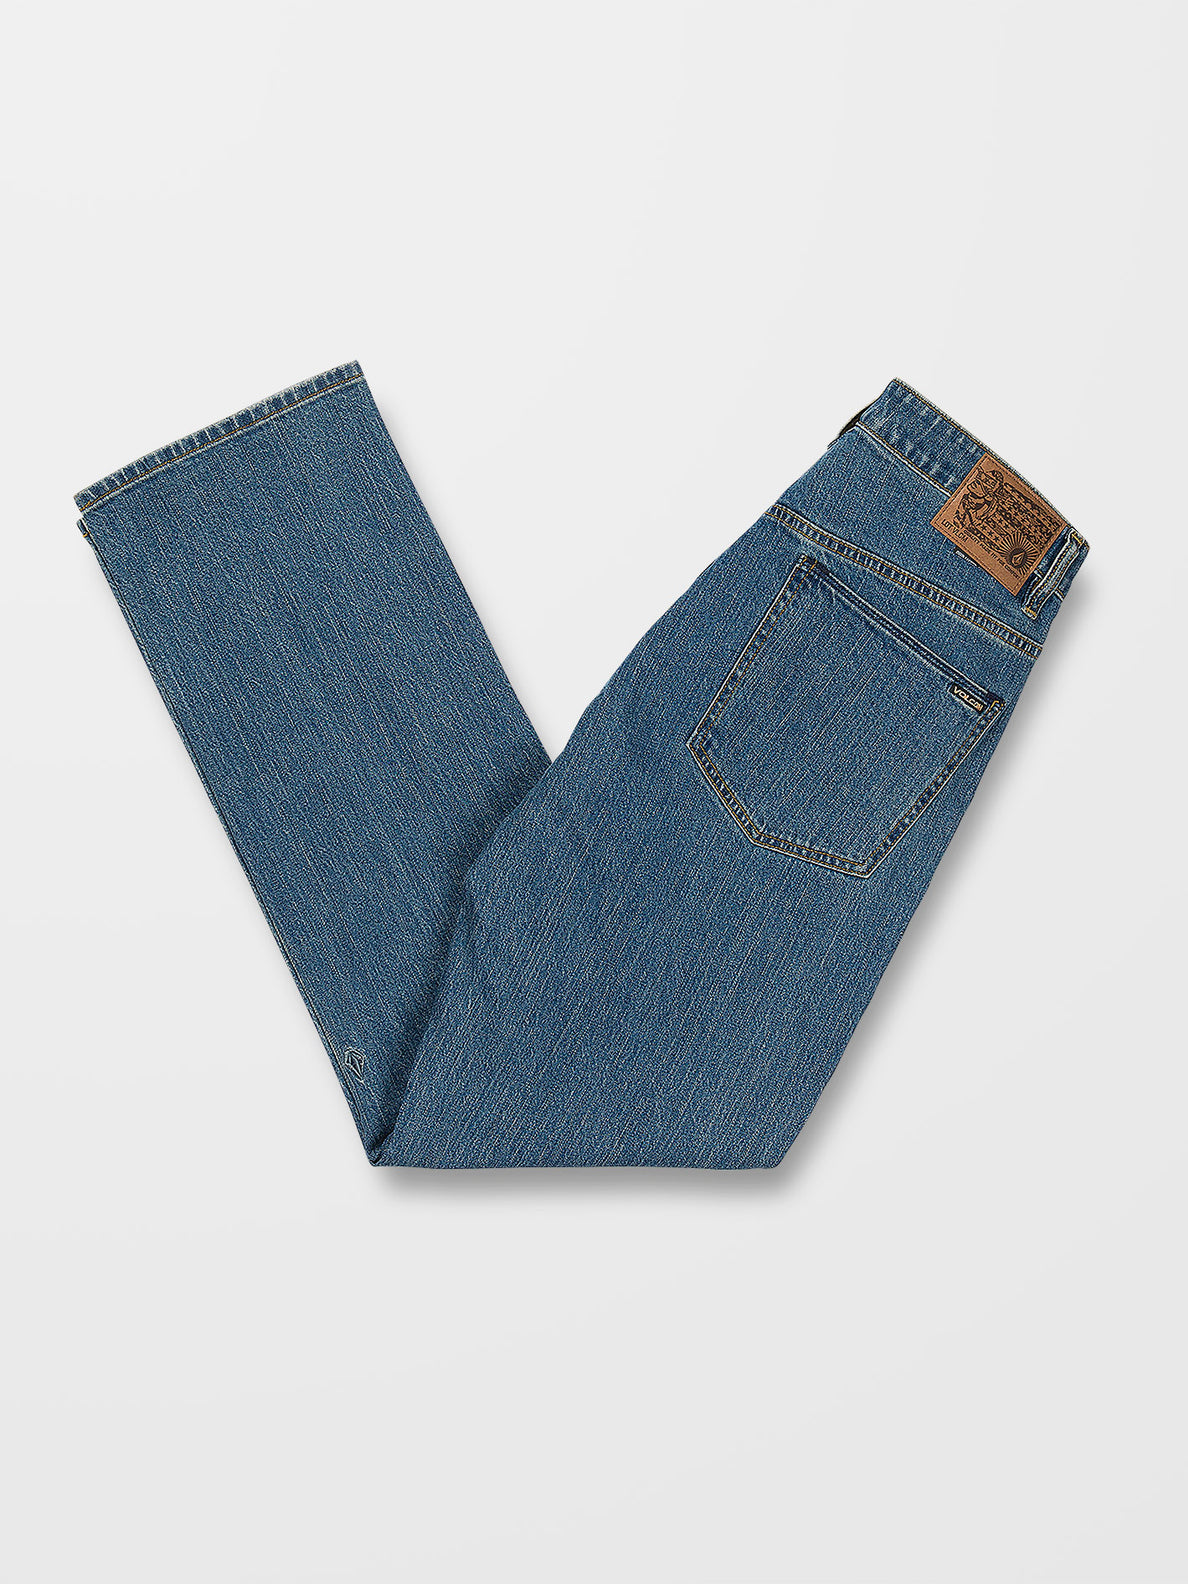 Solver Jeans - AGED INDIGO (A1912303_AIN) [2]